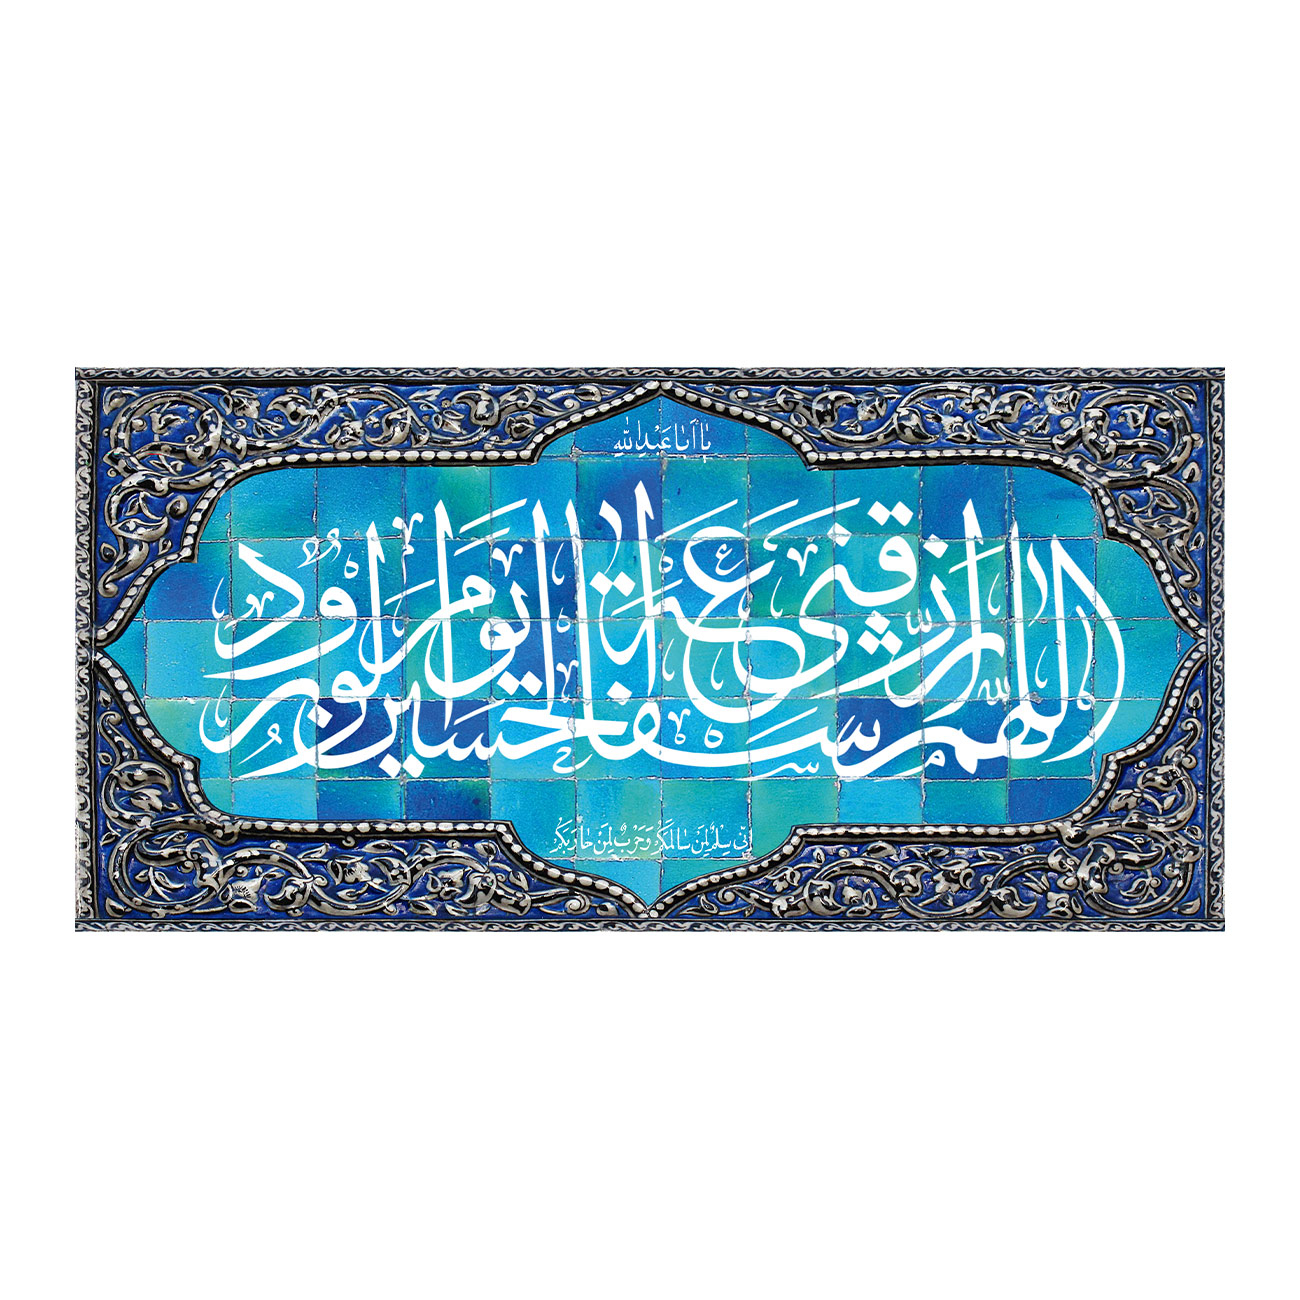  پرچم طرح مناسبتی مدل ذکر اللهم ارزقنی شفاعه الحسین یوم الورود کد 2546D